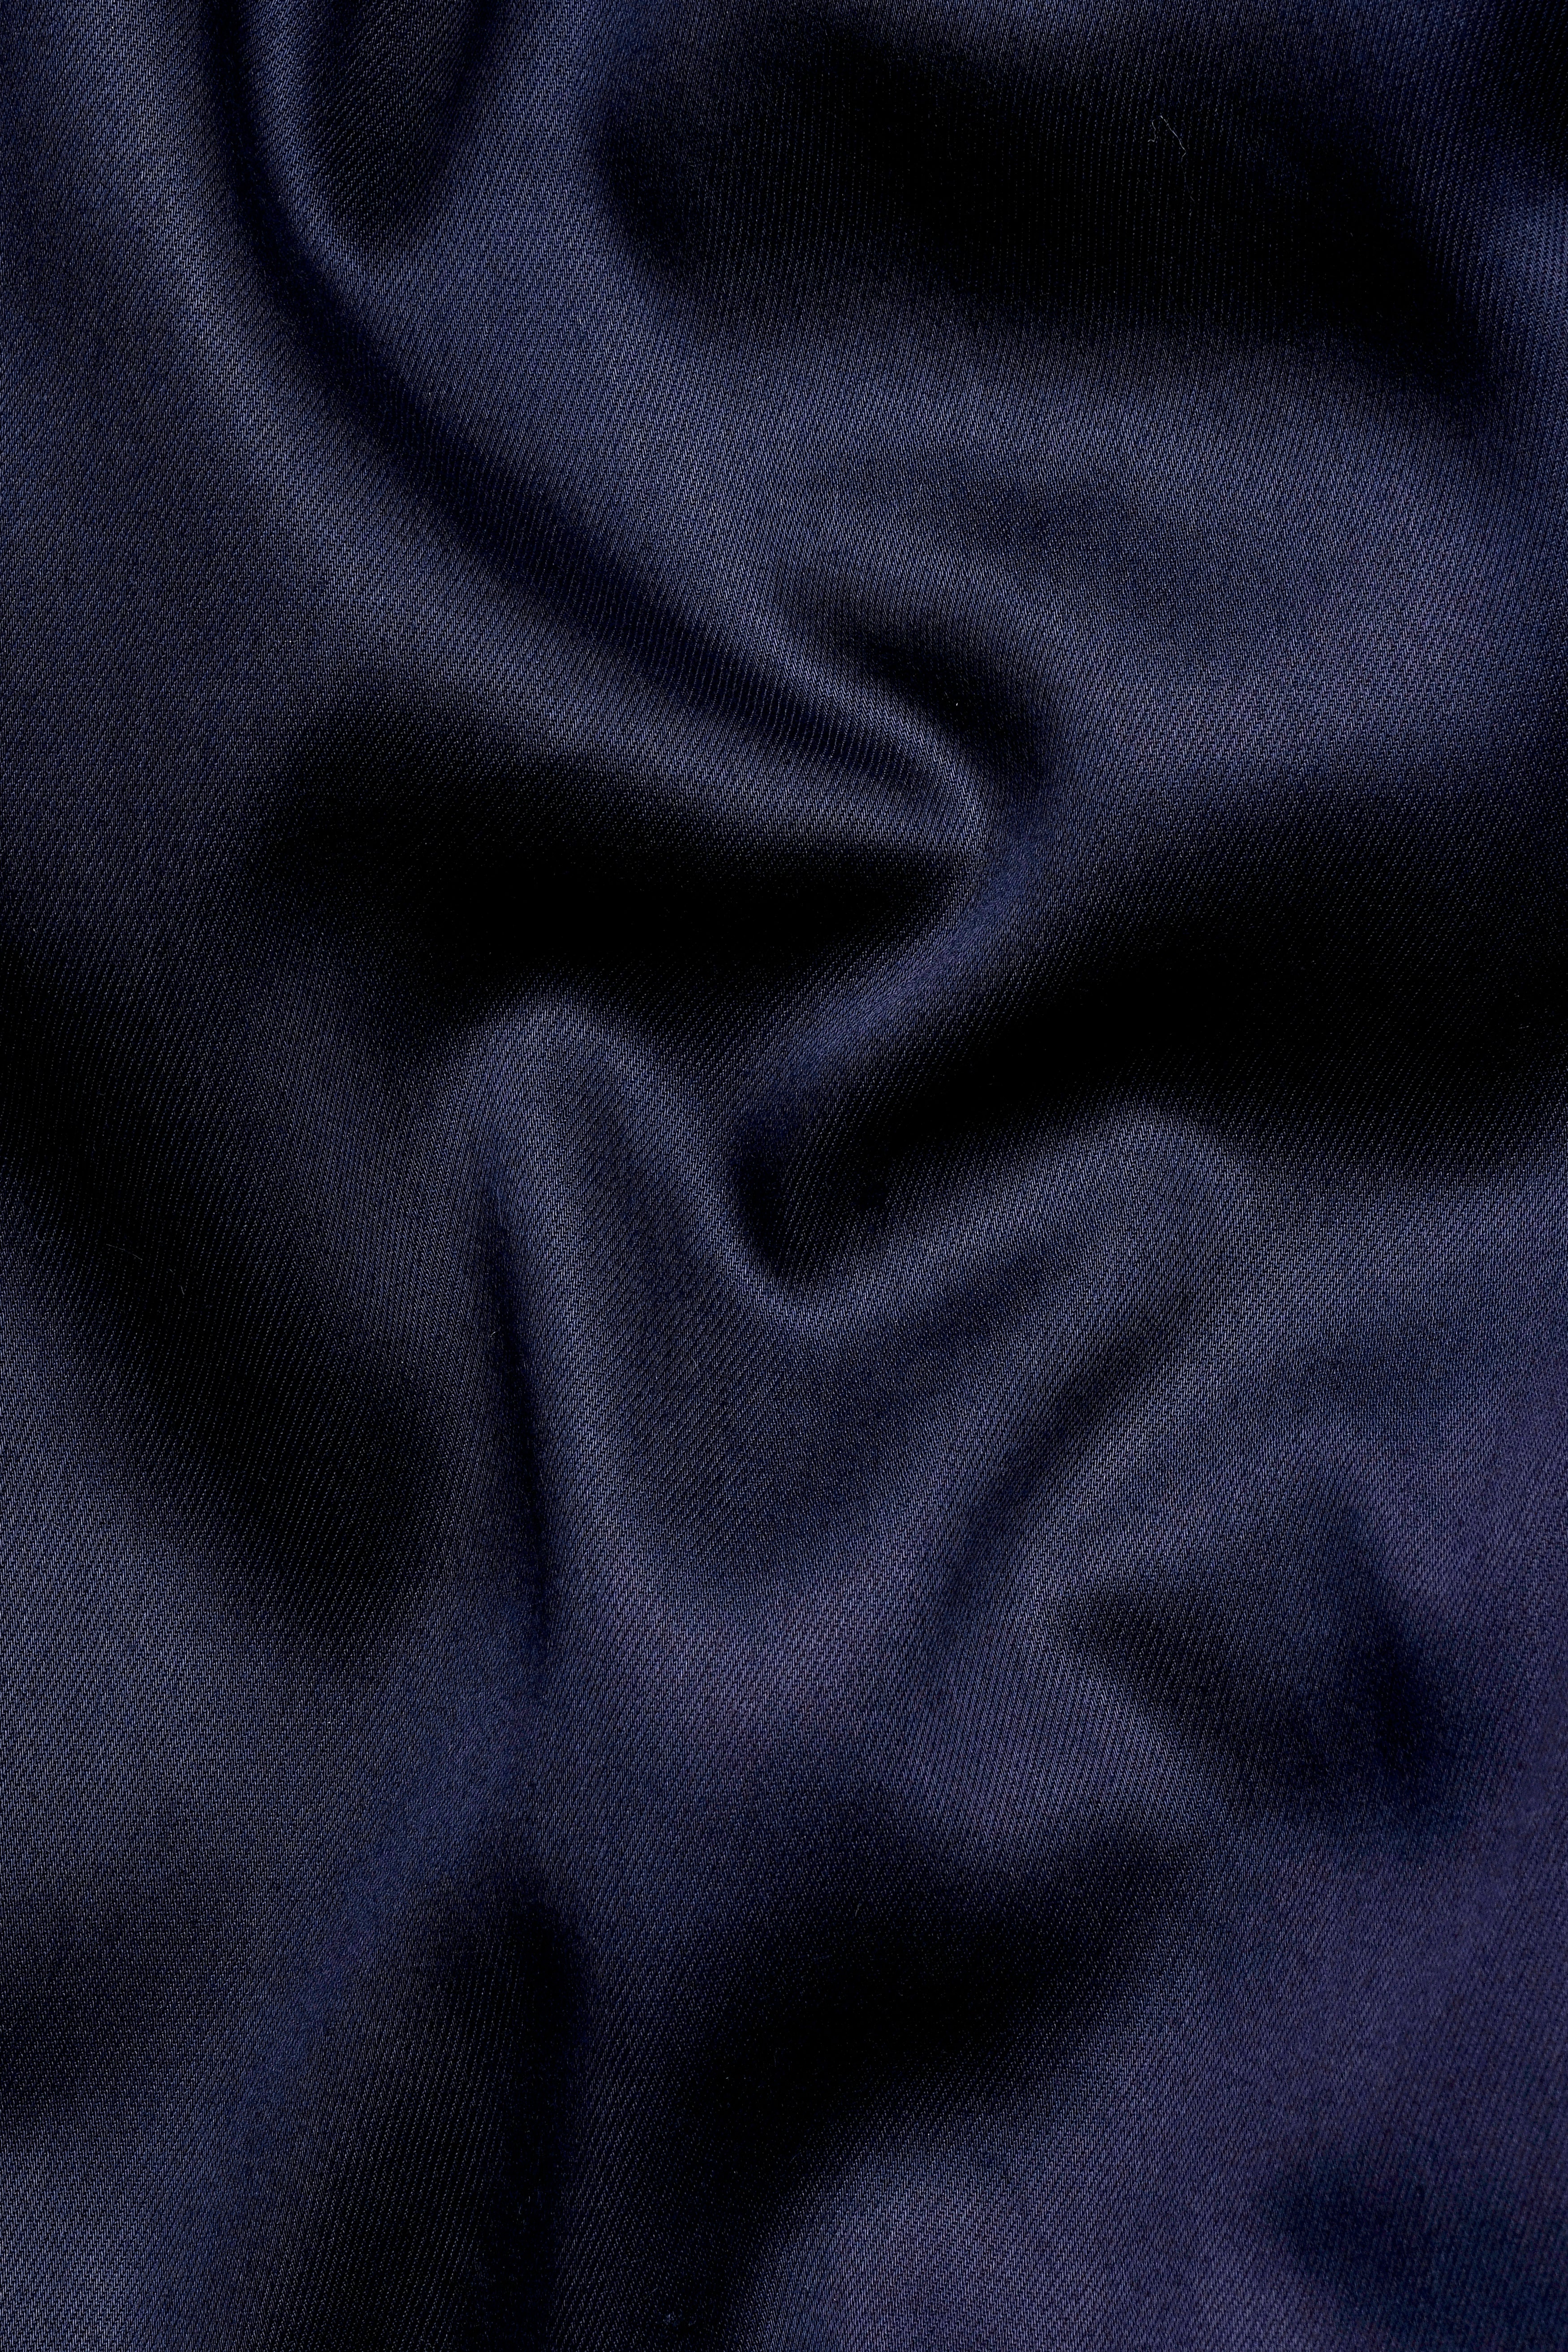 Ebony Clay Blue Wool Rich Pant T3062-28, T3062-30, T3062-32, T3062-34, T3062-36, T3062-38, T3062-40, T3062-42, T3062-44